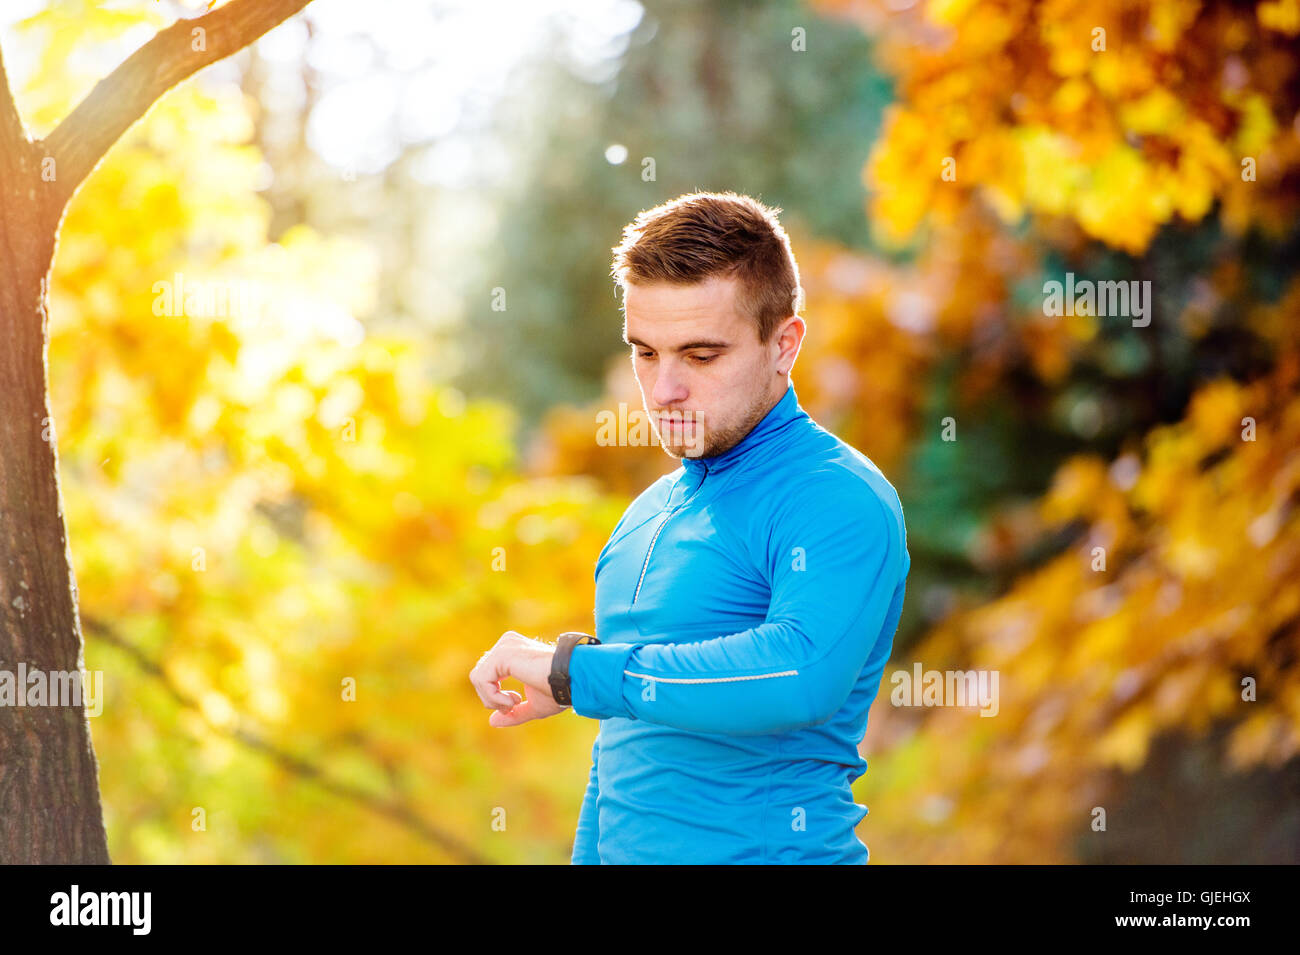 Läufer in der herbstlichen Natur Messzeit mit seiner Uhr Stockfoto